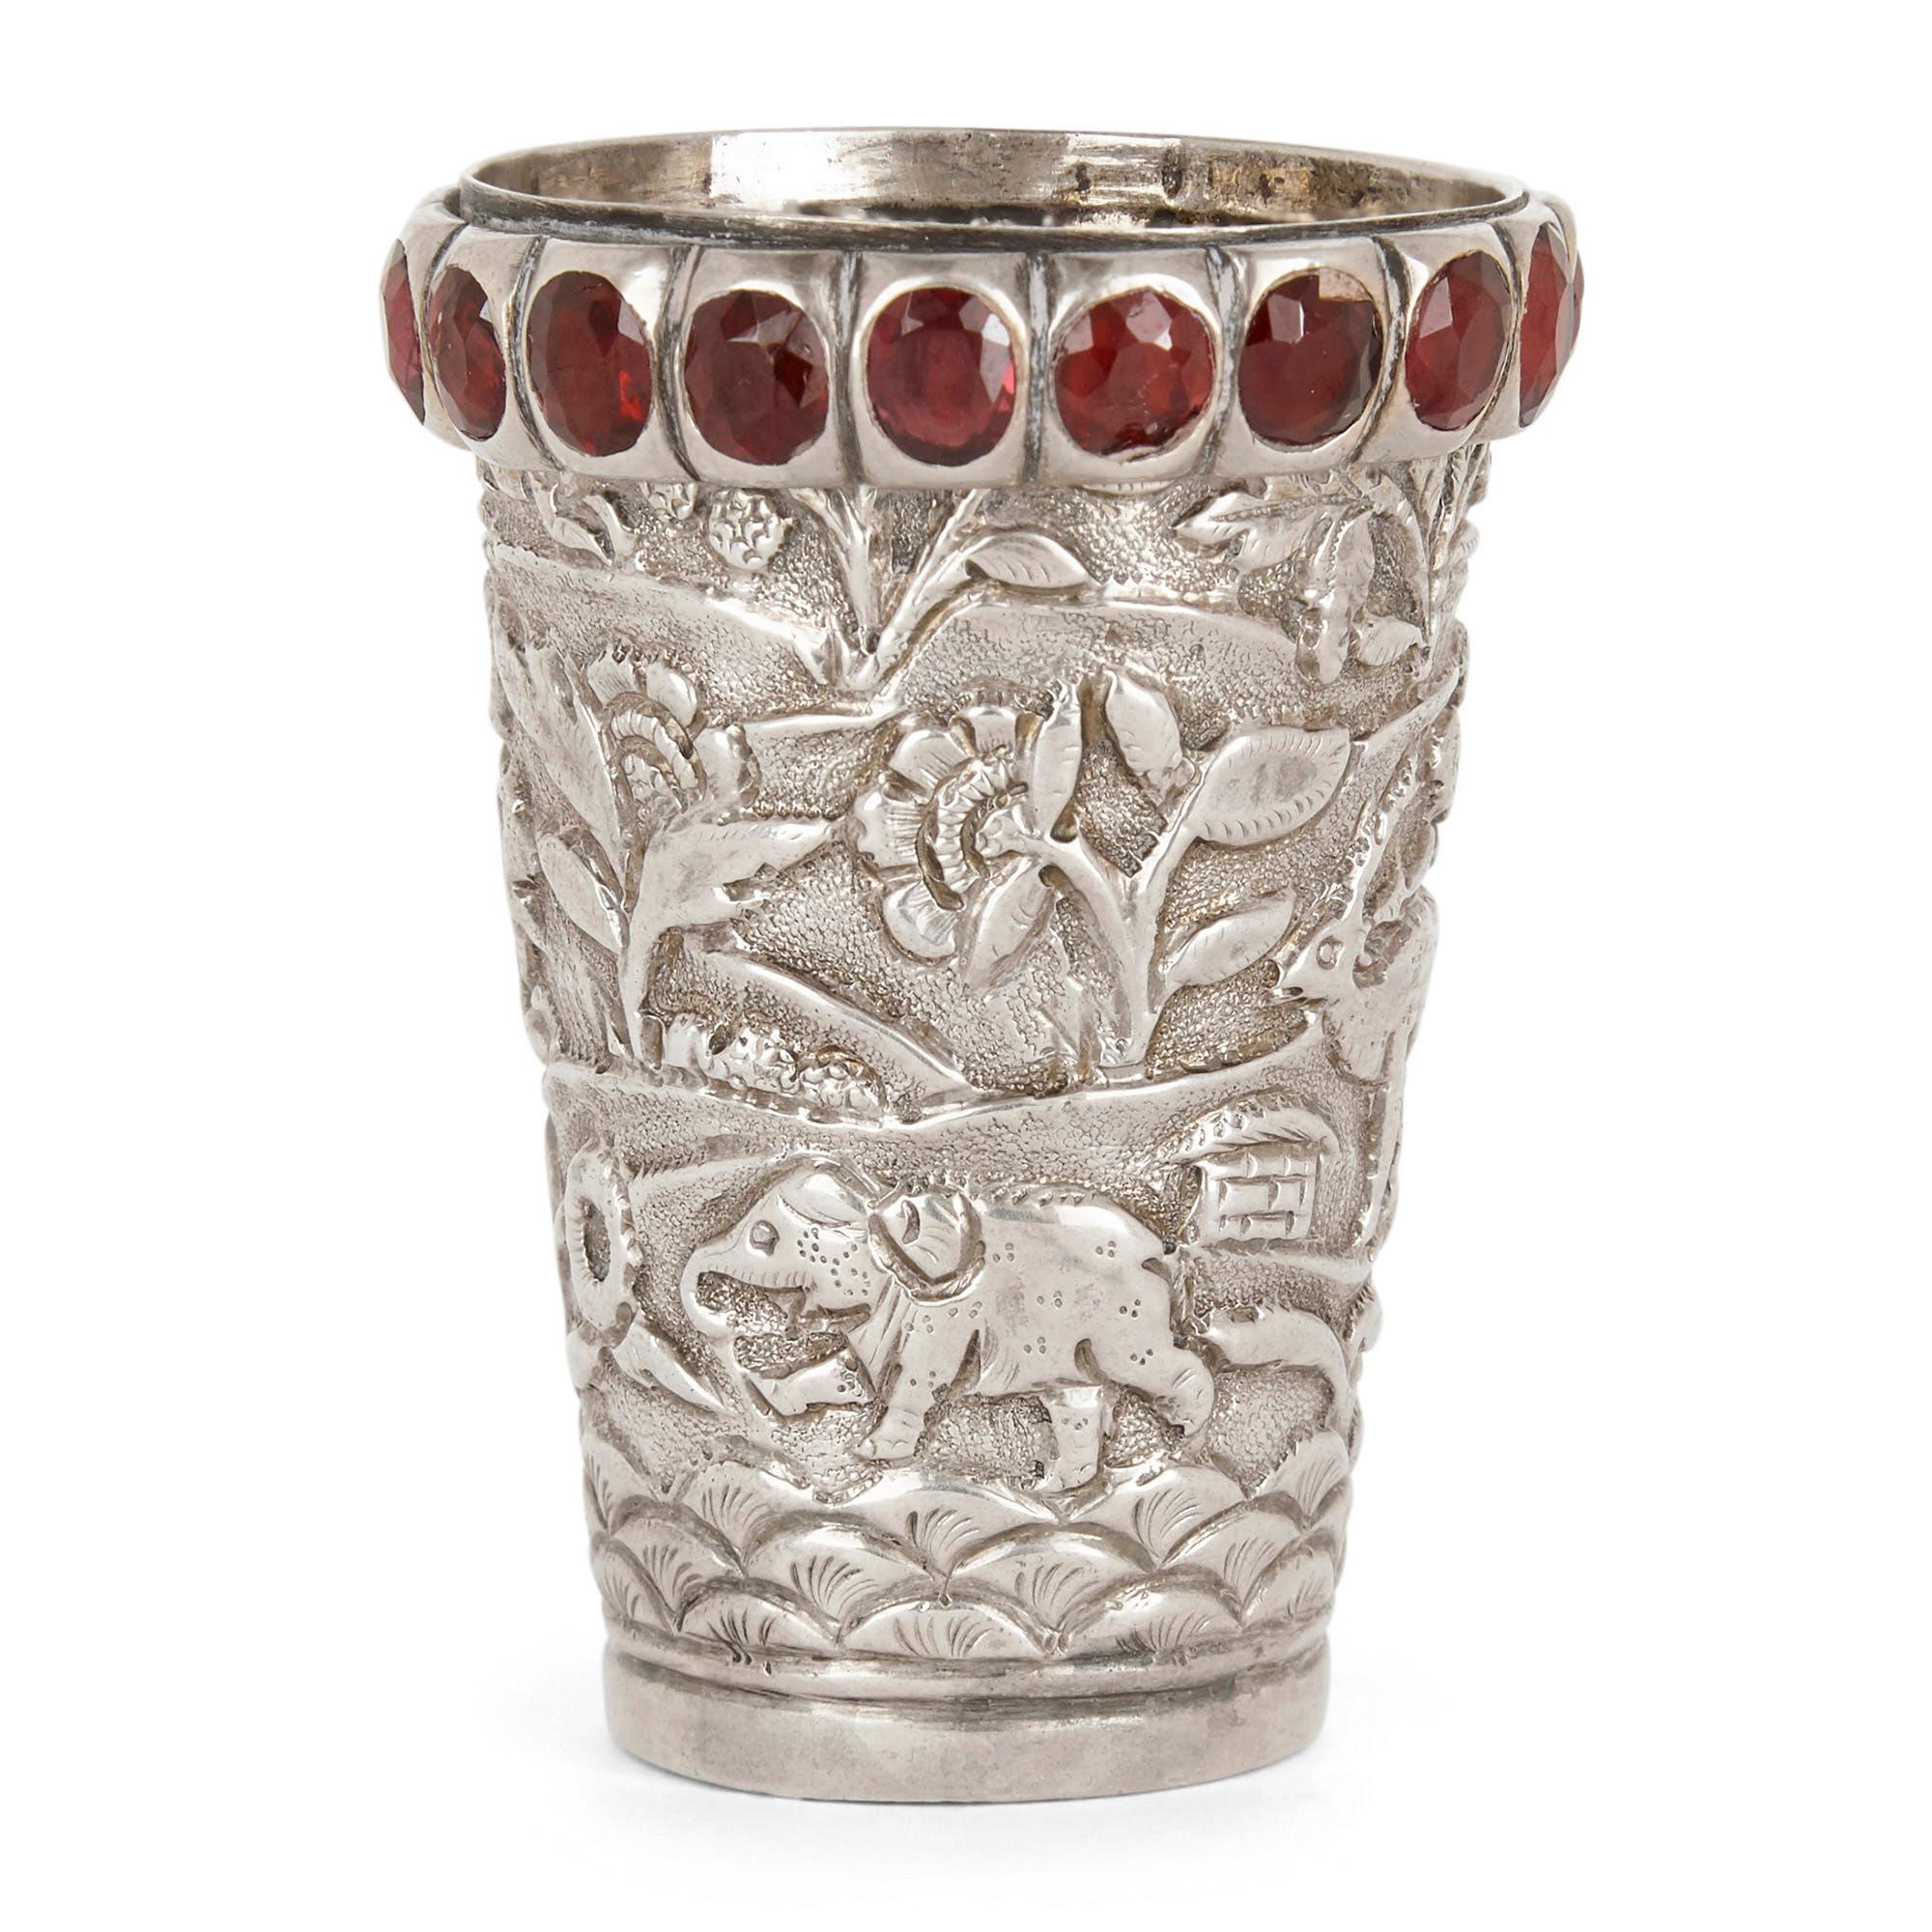 Indischer Silberbecher mit Juwelen und Tieren verziert
Indisch, 19. Jahrhundert
Maße: Höhe 6cm, Durchmesser 4cm

Dieser bezaubernde Becher aus indischem Silber zeichnet sich durch eine wunderschöne, geprägte Oberflächenverzierung aus. Diese